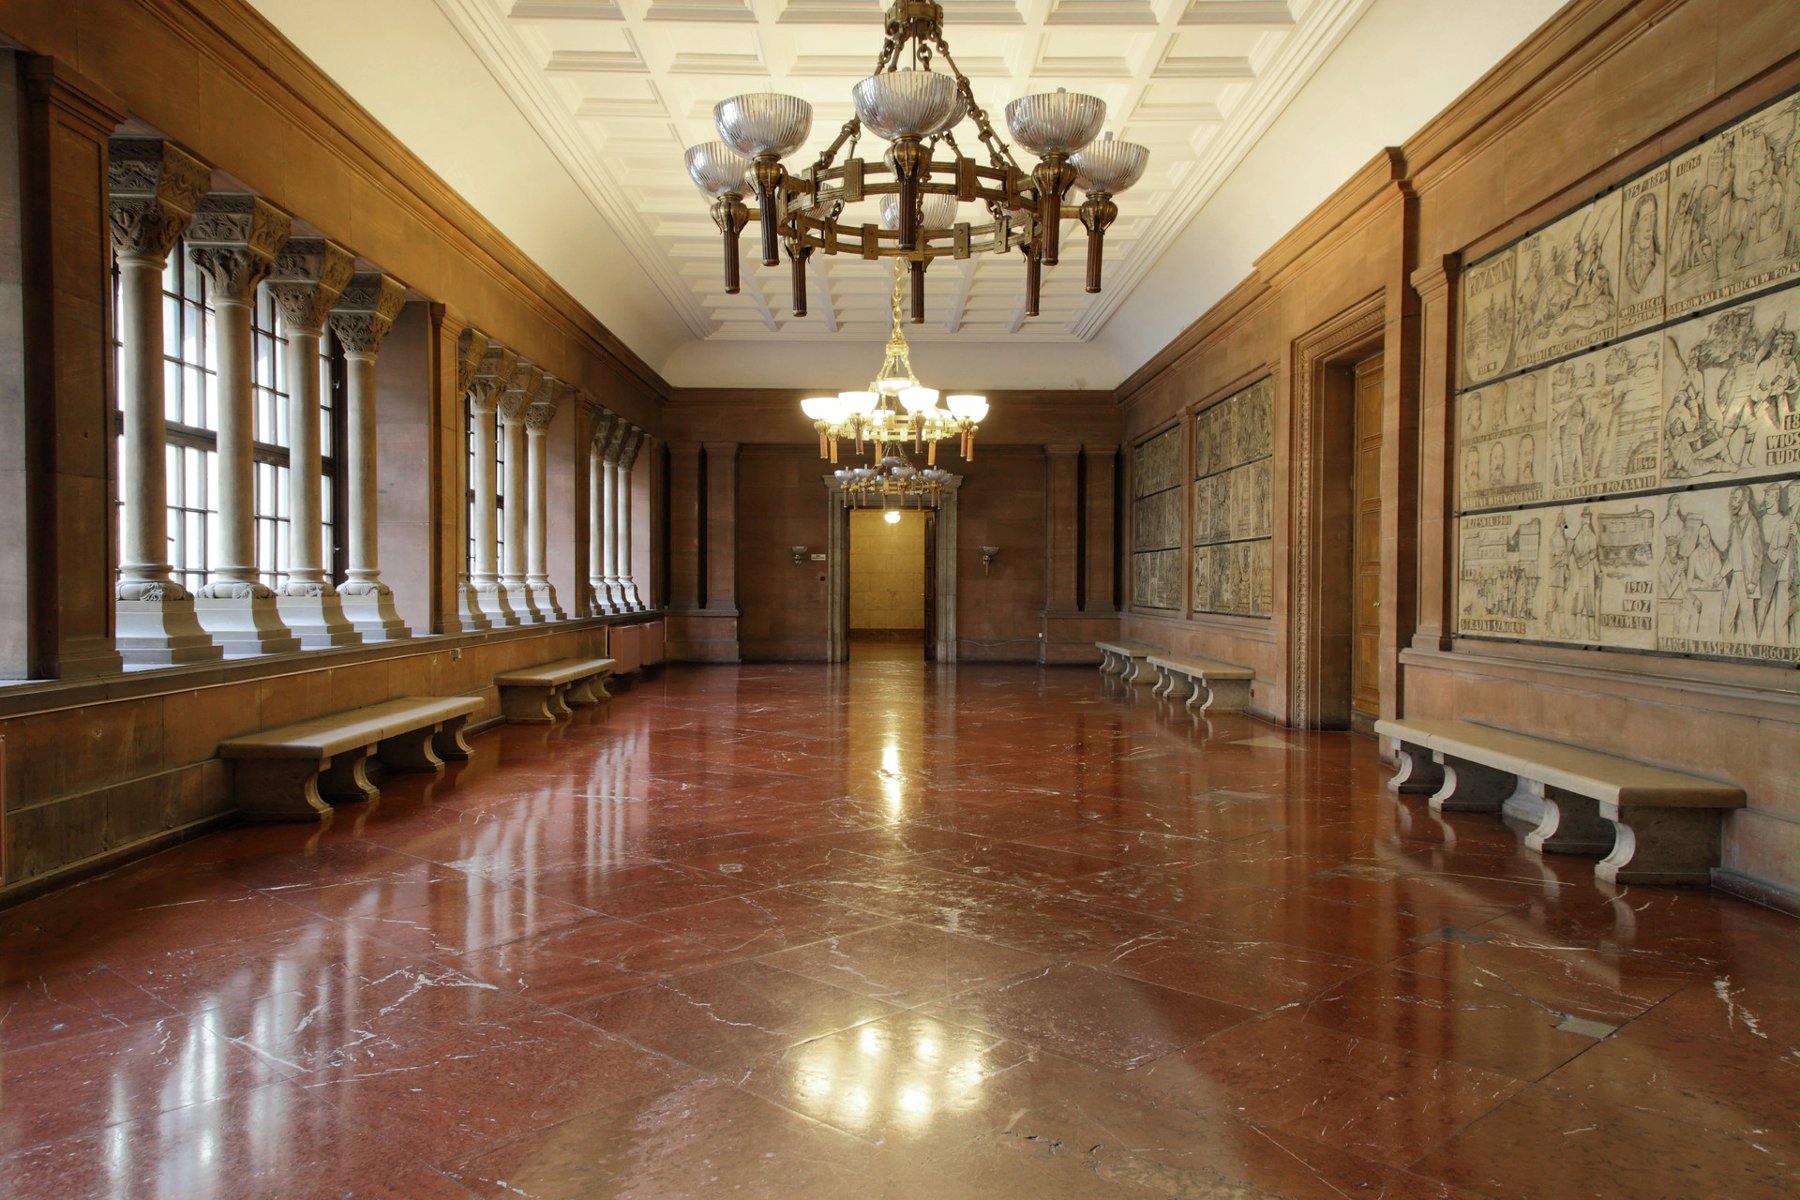 Zdjęcie jednego z zamkowych korytarzy. Kamienna posadzka w ciemnoczerwonym kolorze, okazałe żyrandole zwisające z sufitu. Z lewej strony rząd okien, pod ścianami ławki.